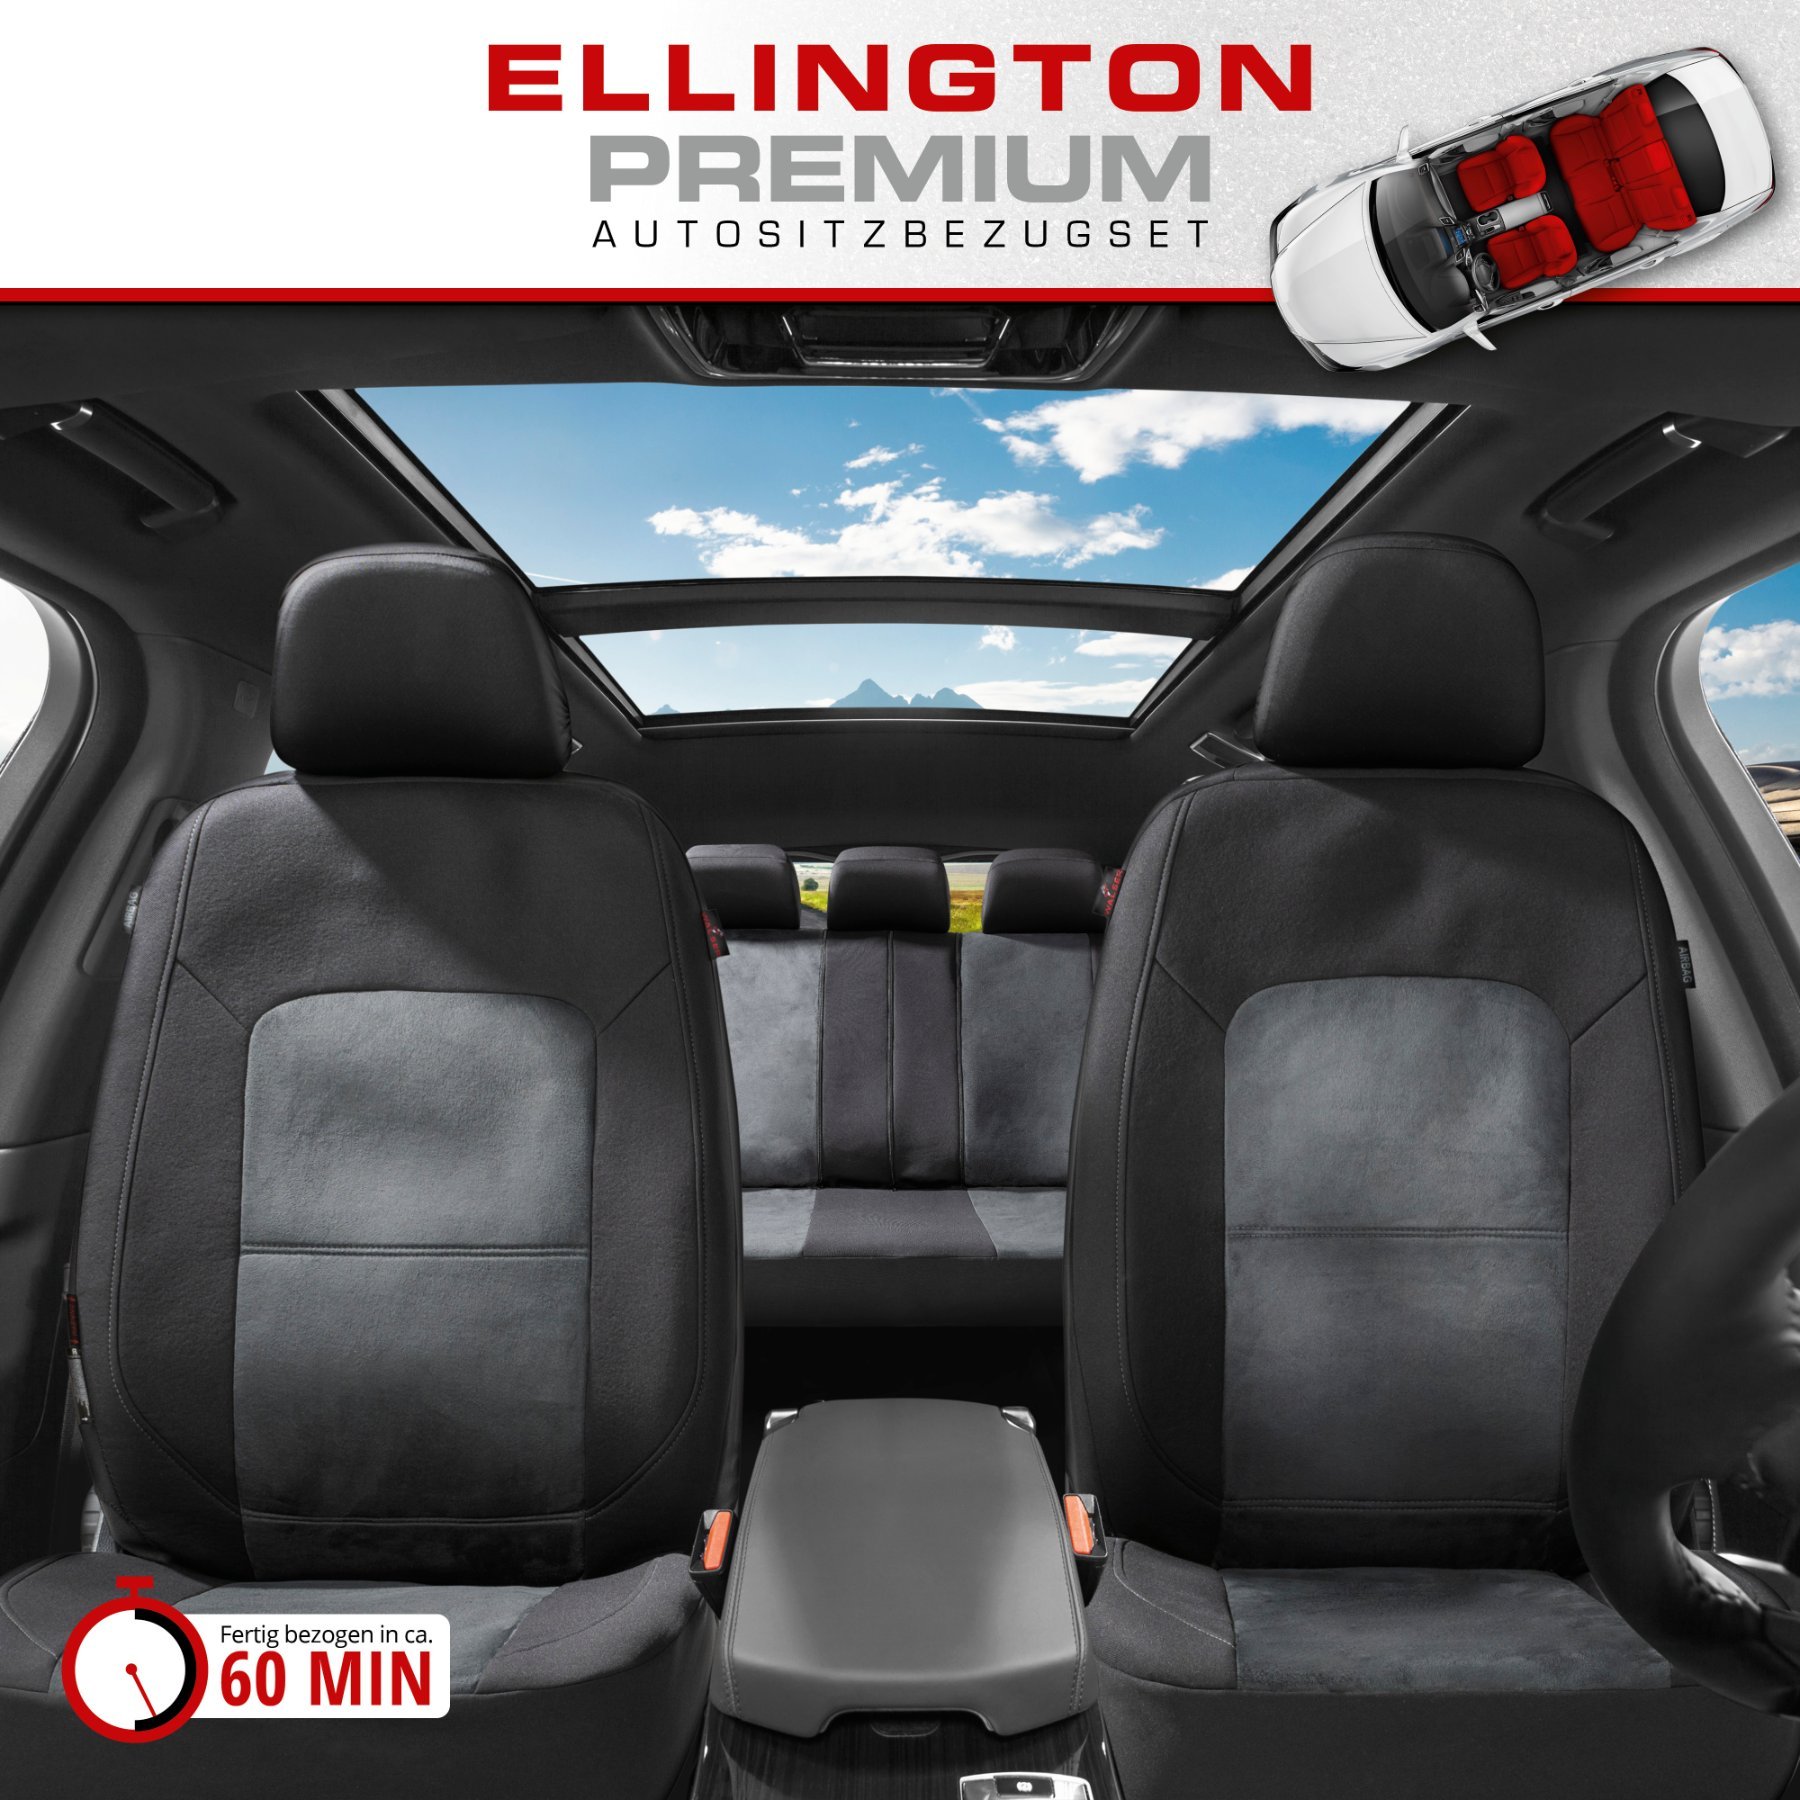 ZIPP IT Premium Autositzbezüge Ellington Komplettset mit Reißverschluss-System schwarz/grau